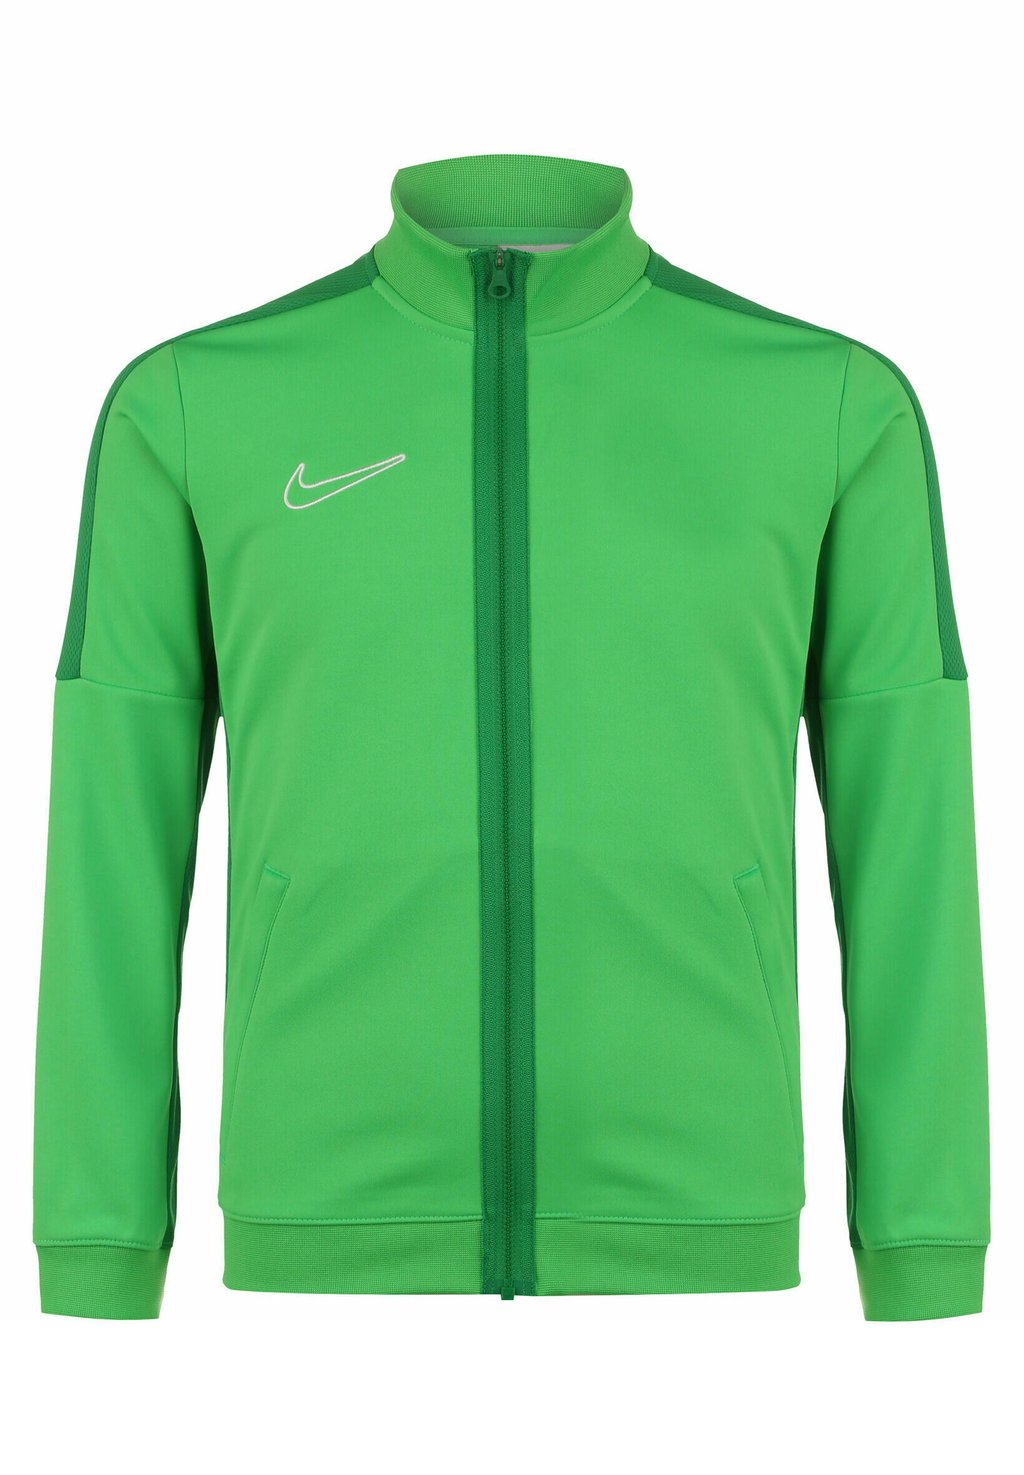 Спортивная куртка Academy 23 Nike, цвет green spark lucky green white